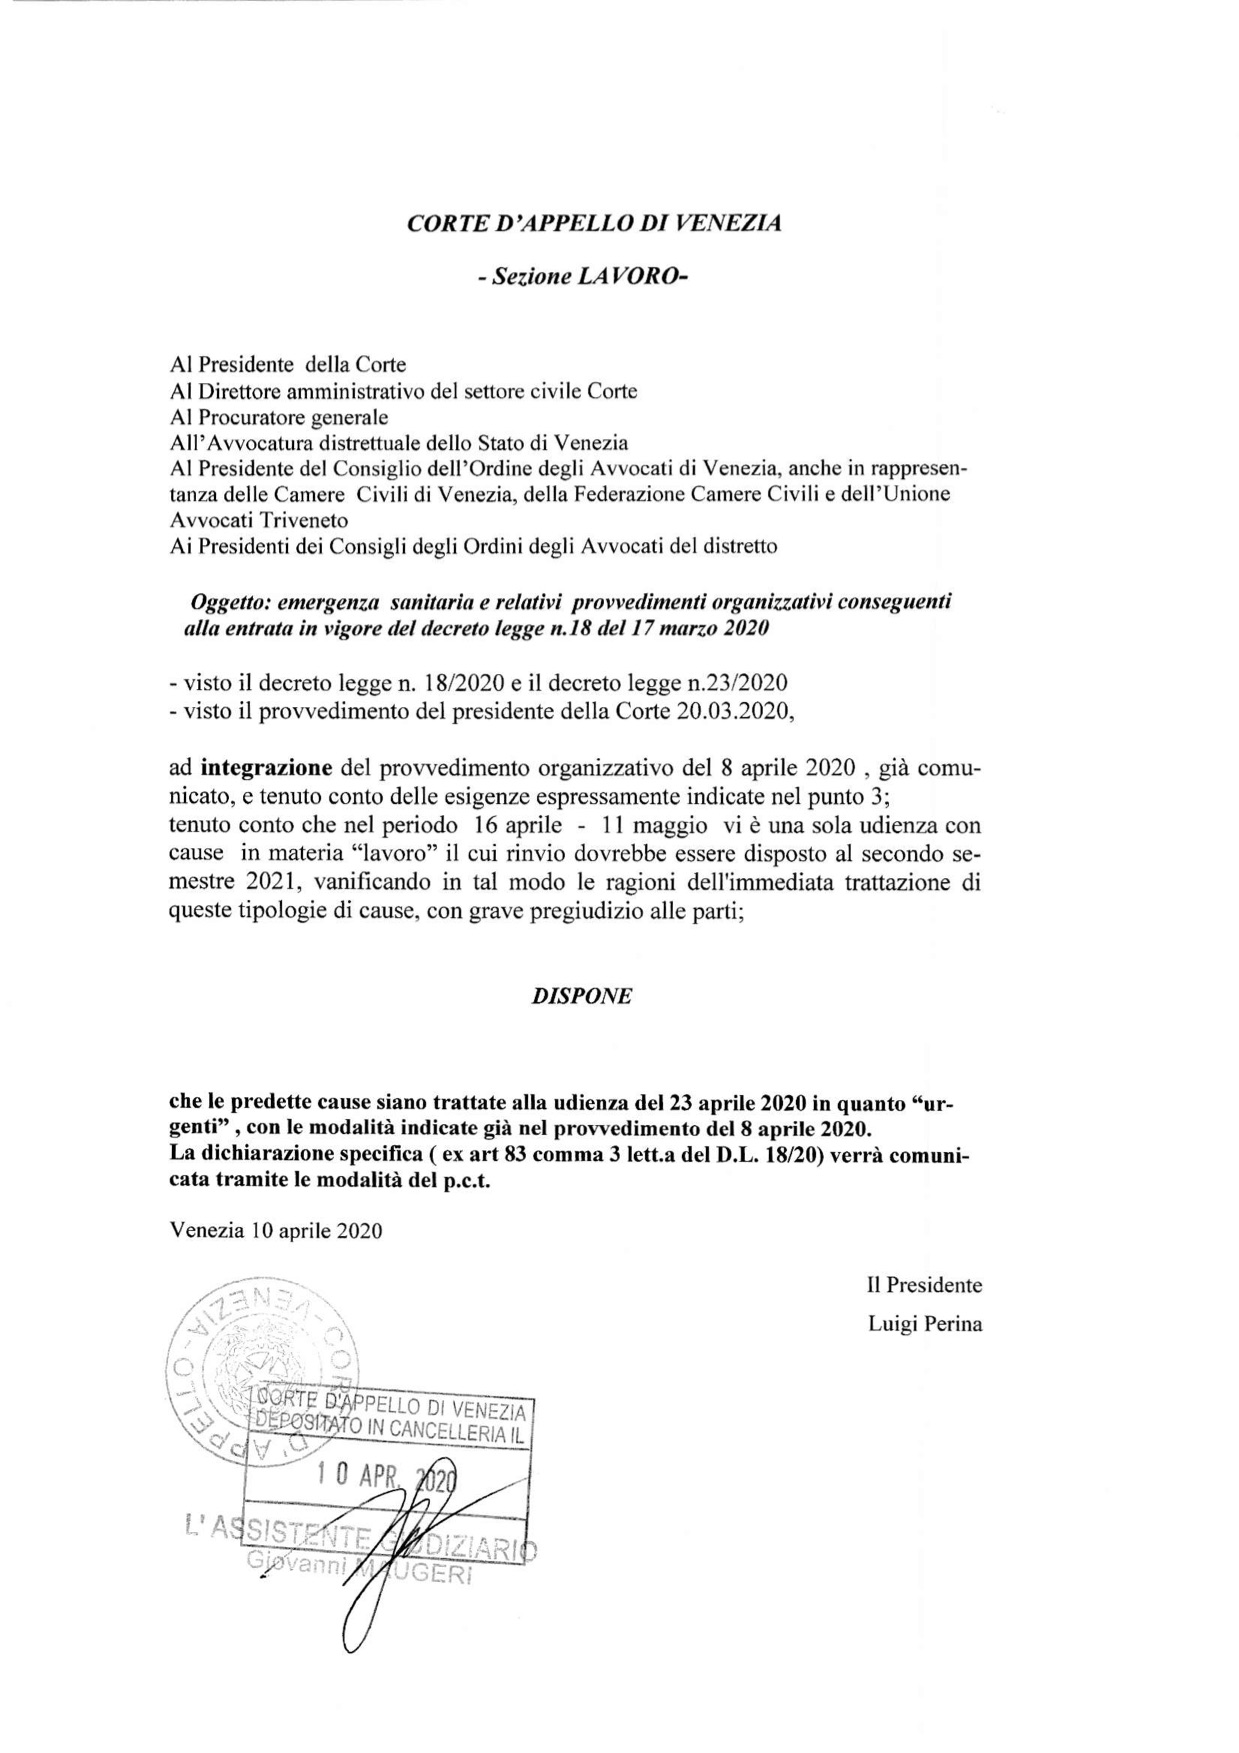 Provvedimento Presidente Corte d'Appello di Venezia Sezione Lavoro 10.04.2020 -Integrazione del provvedimento organizzativo del 8 aprile 2020